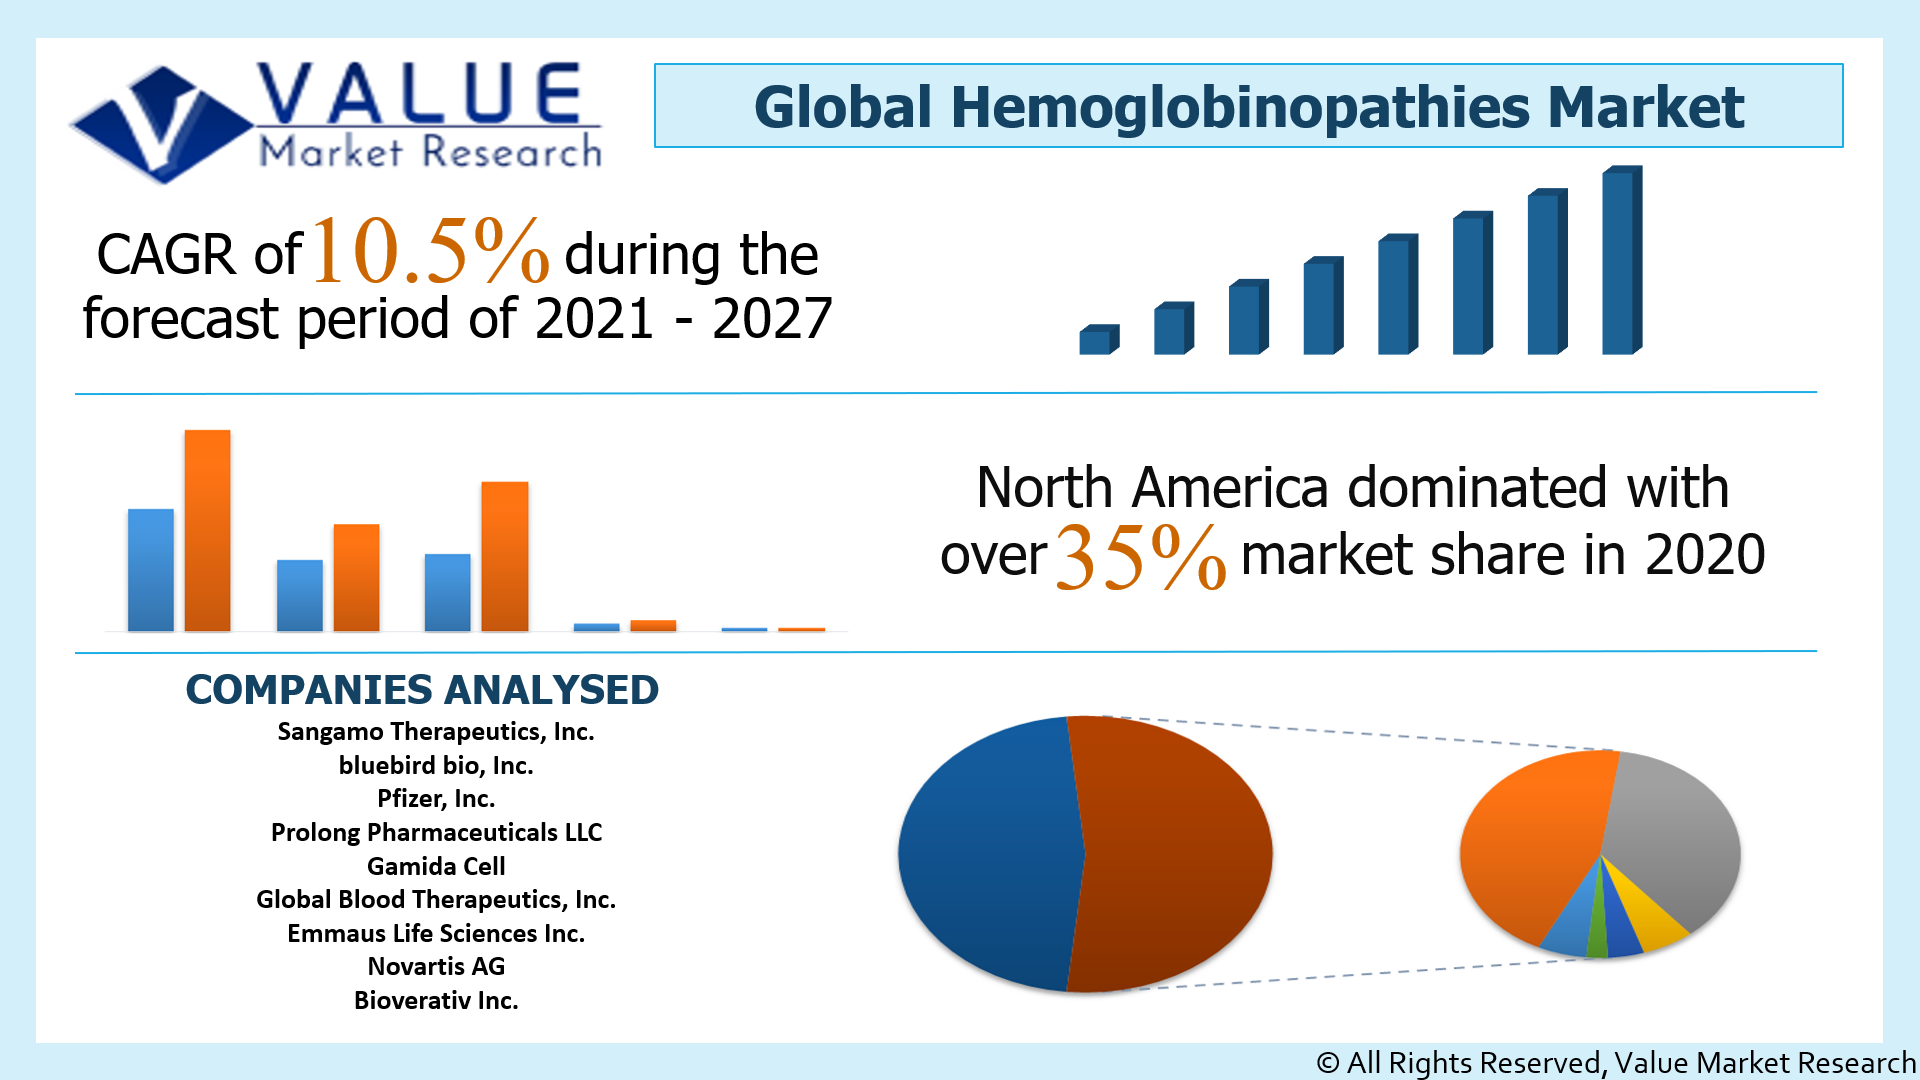 Global Hemoglobinopathies Market Share